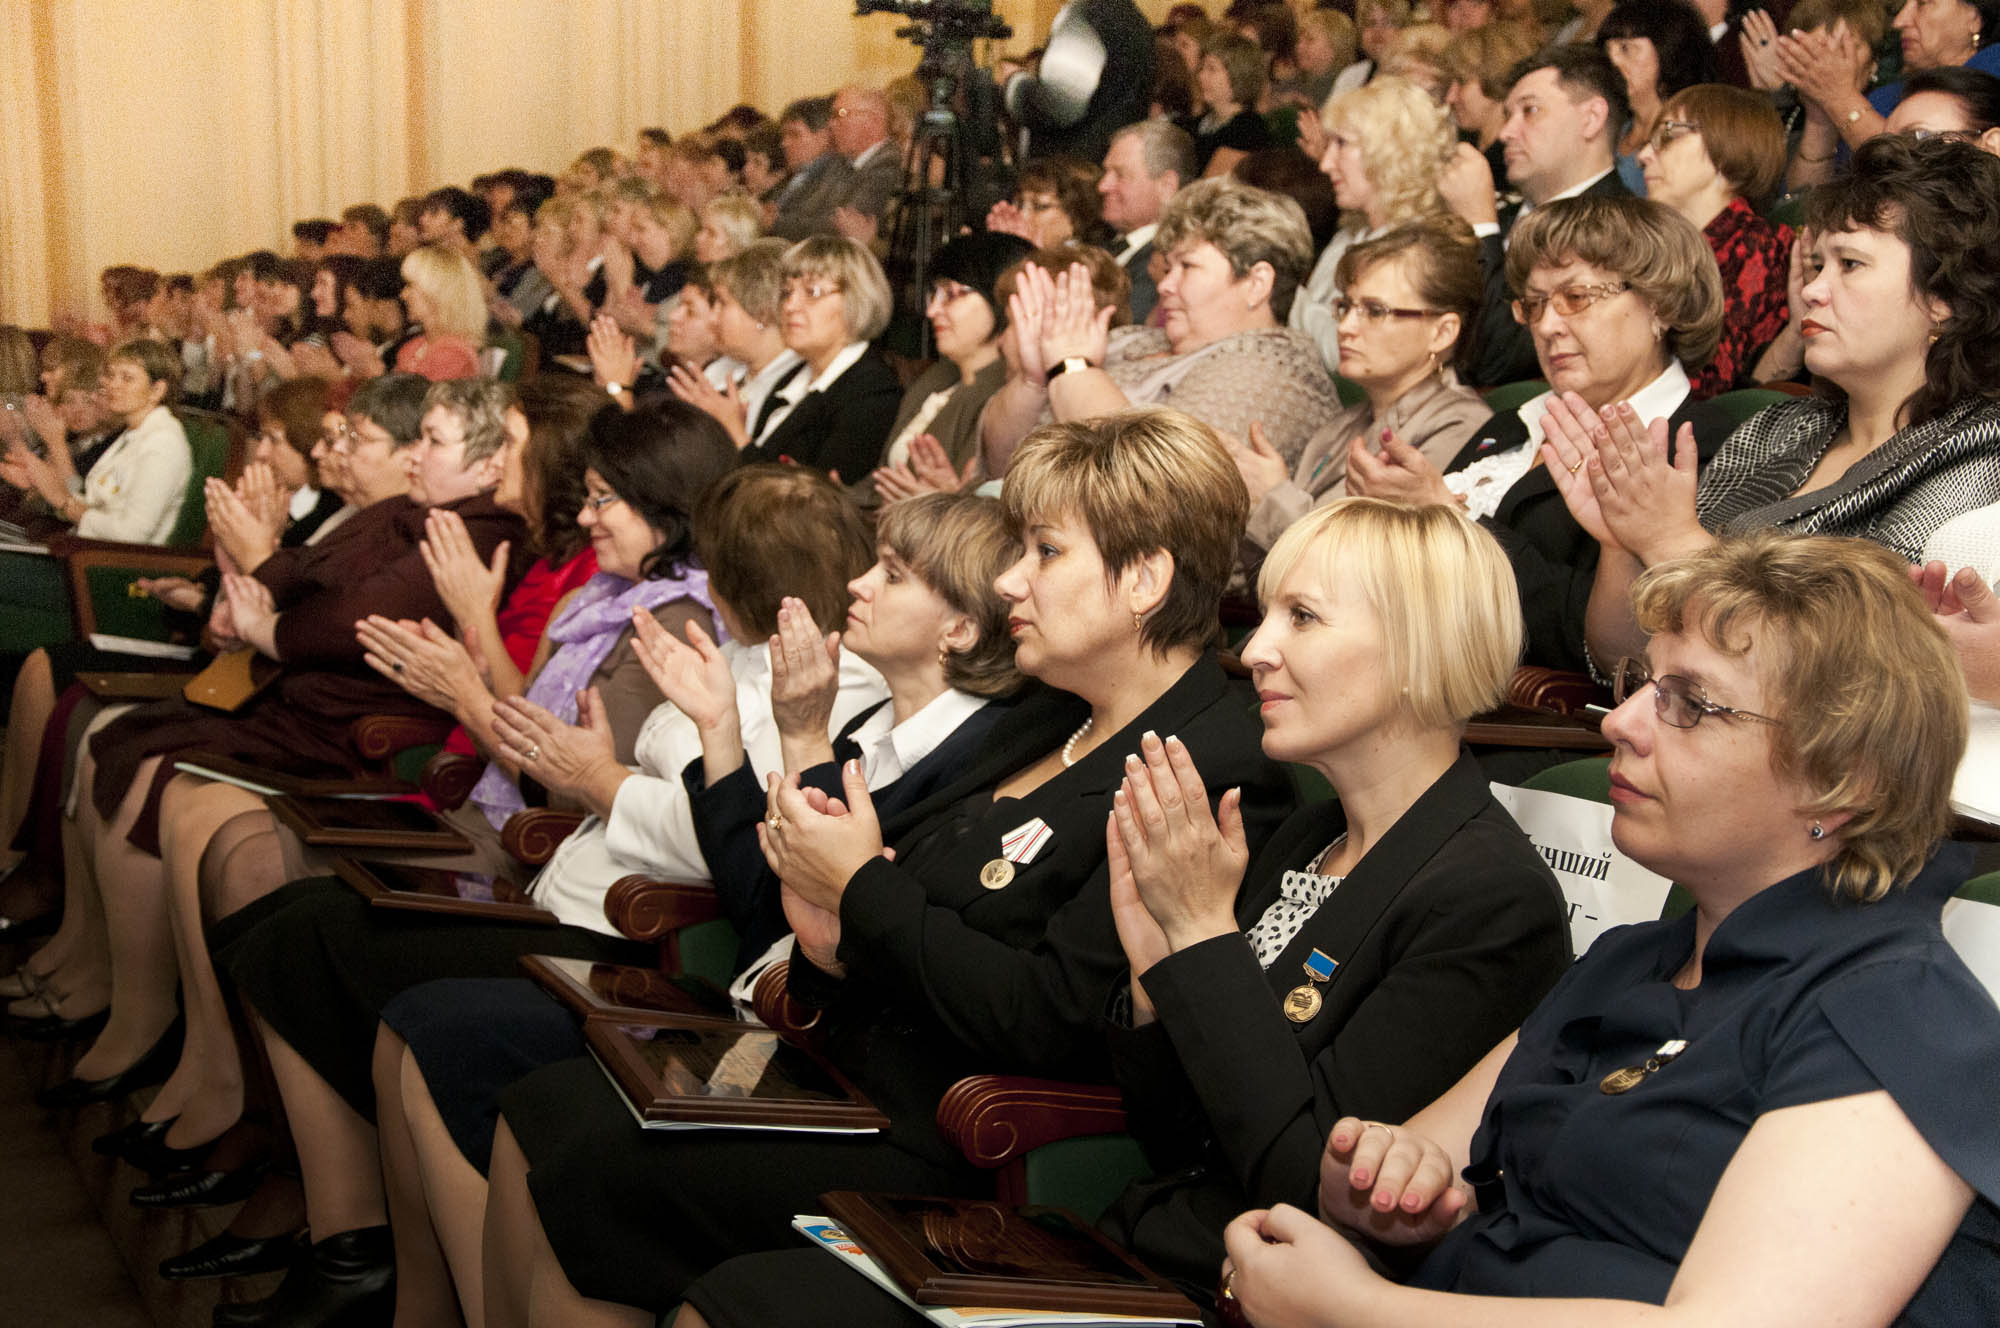 4 октября в Ленинске-Кузнецком состоится торжественный прием с участием Губернатора Кузбасса Сергея Цивилева, посвященный Дню учителя 